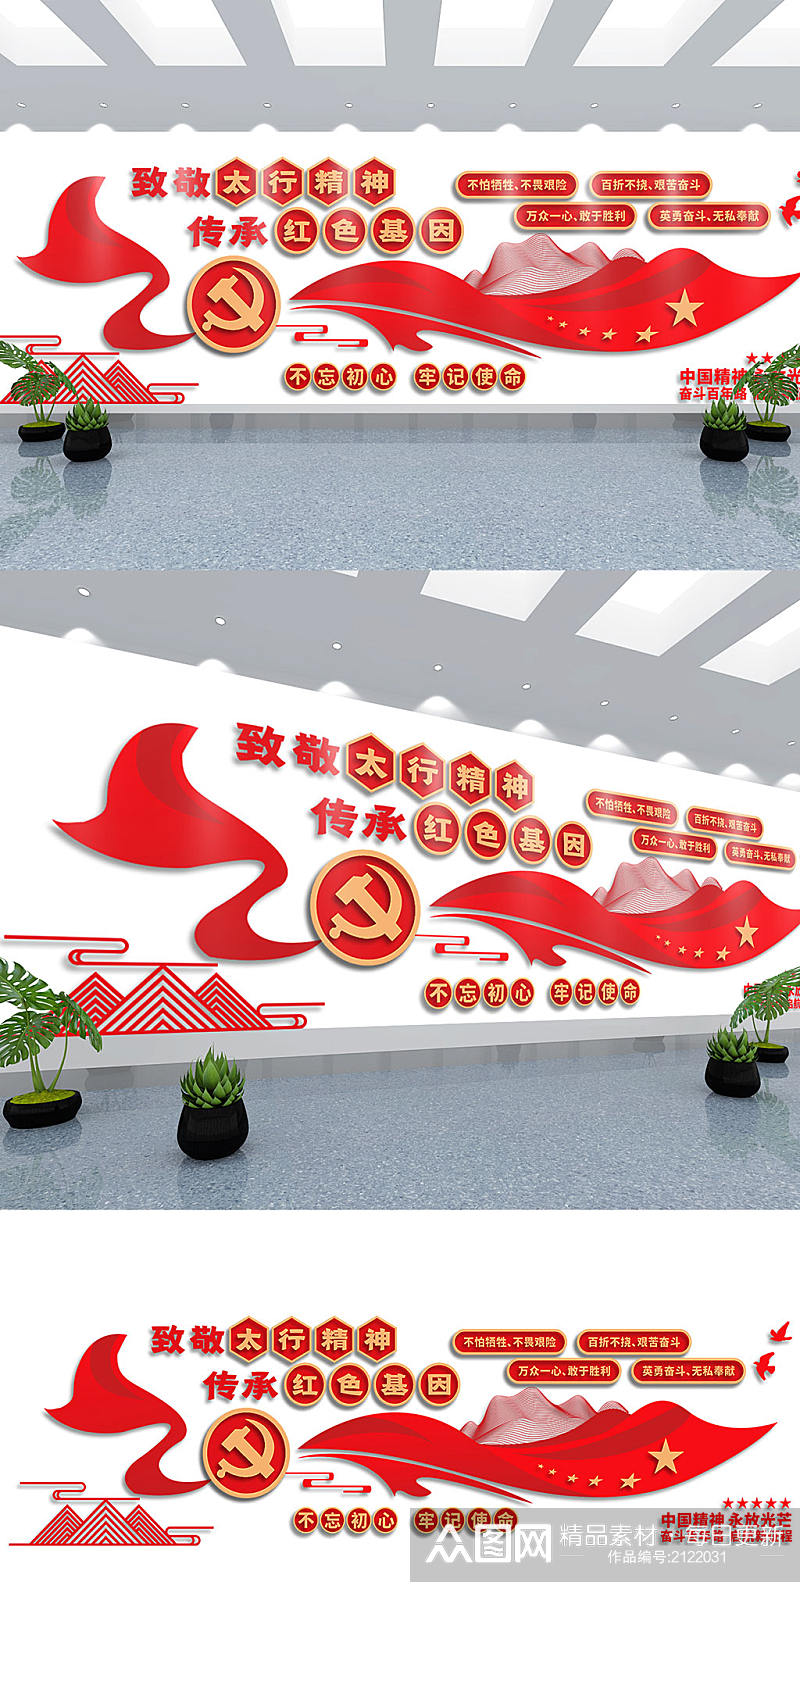 太行精神红色大气中国精神党建文化墙素材